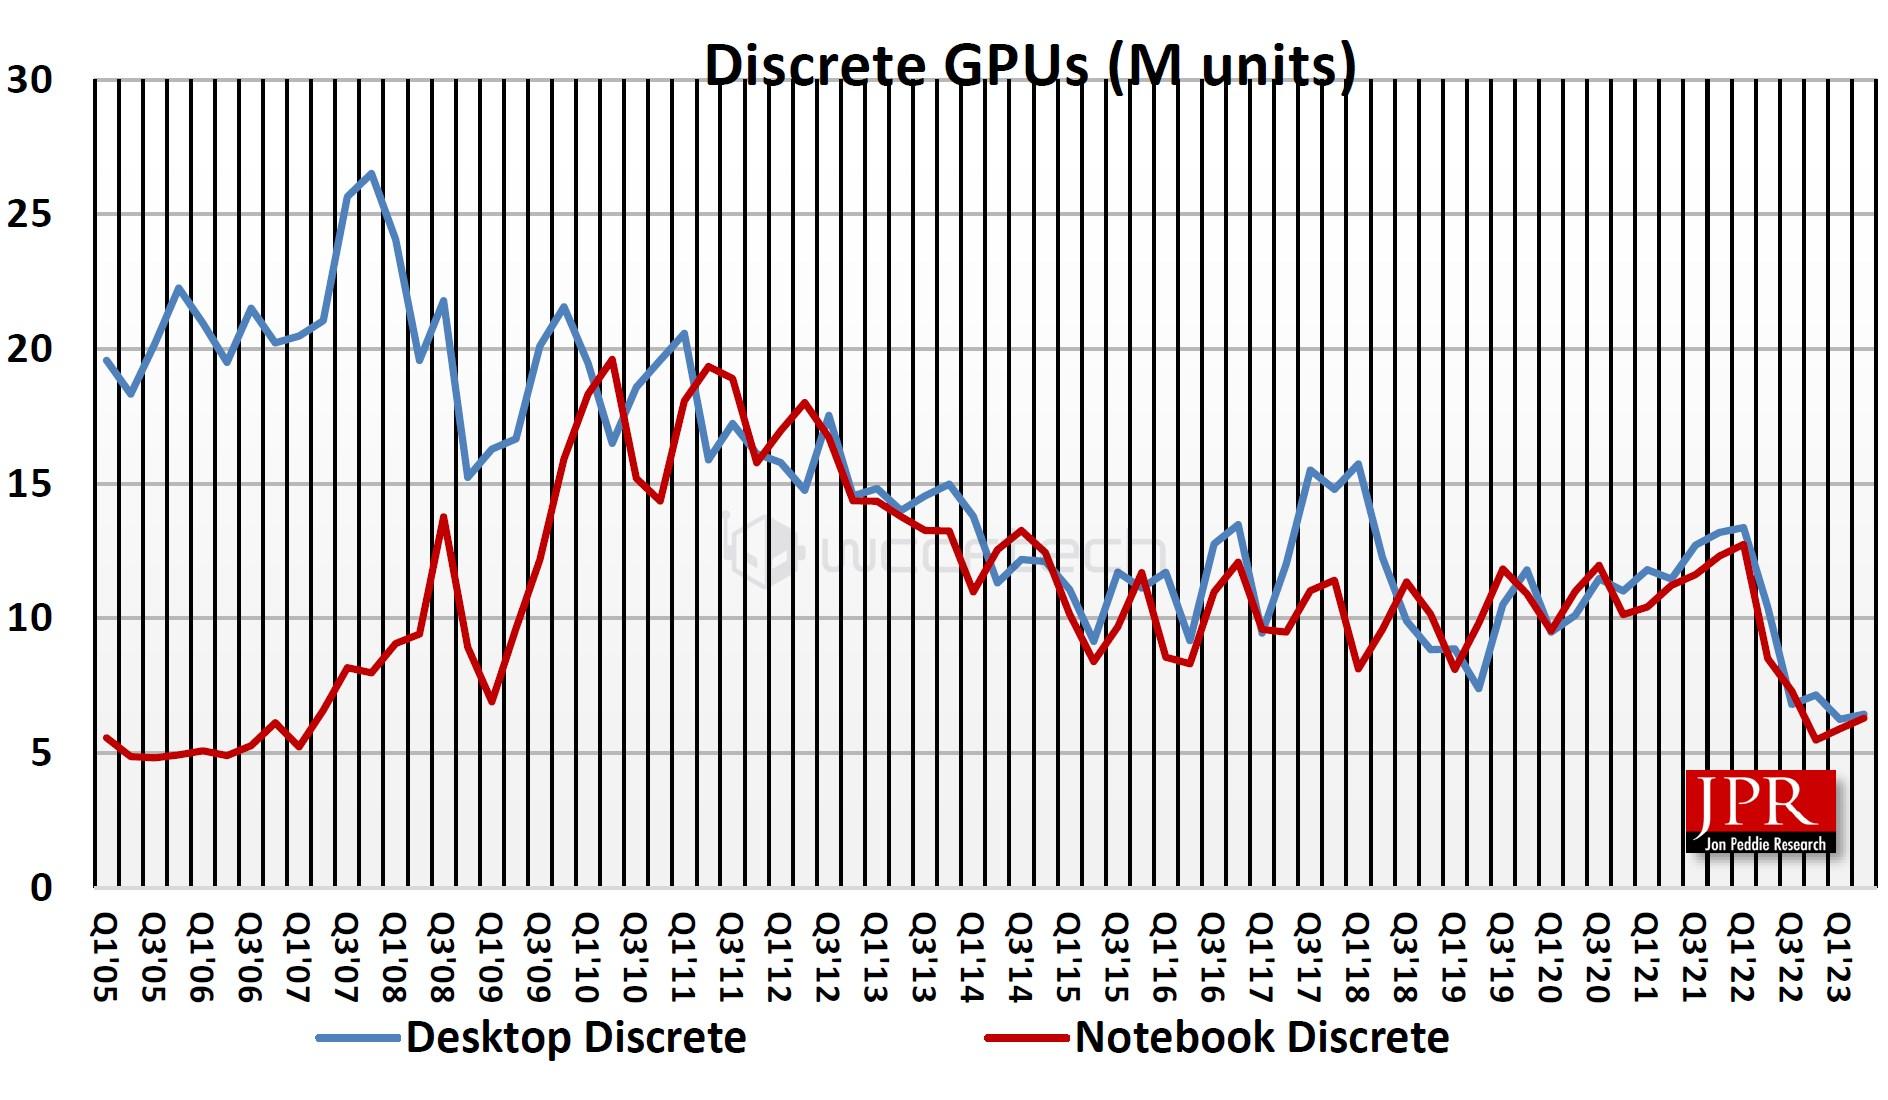 jpr stats ventes gpu discrete gpu q1 2005 q3 2023